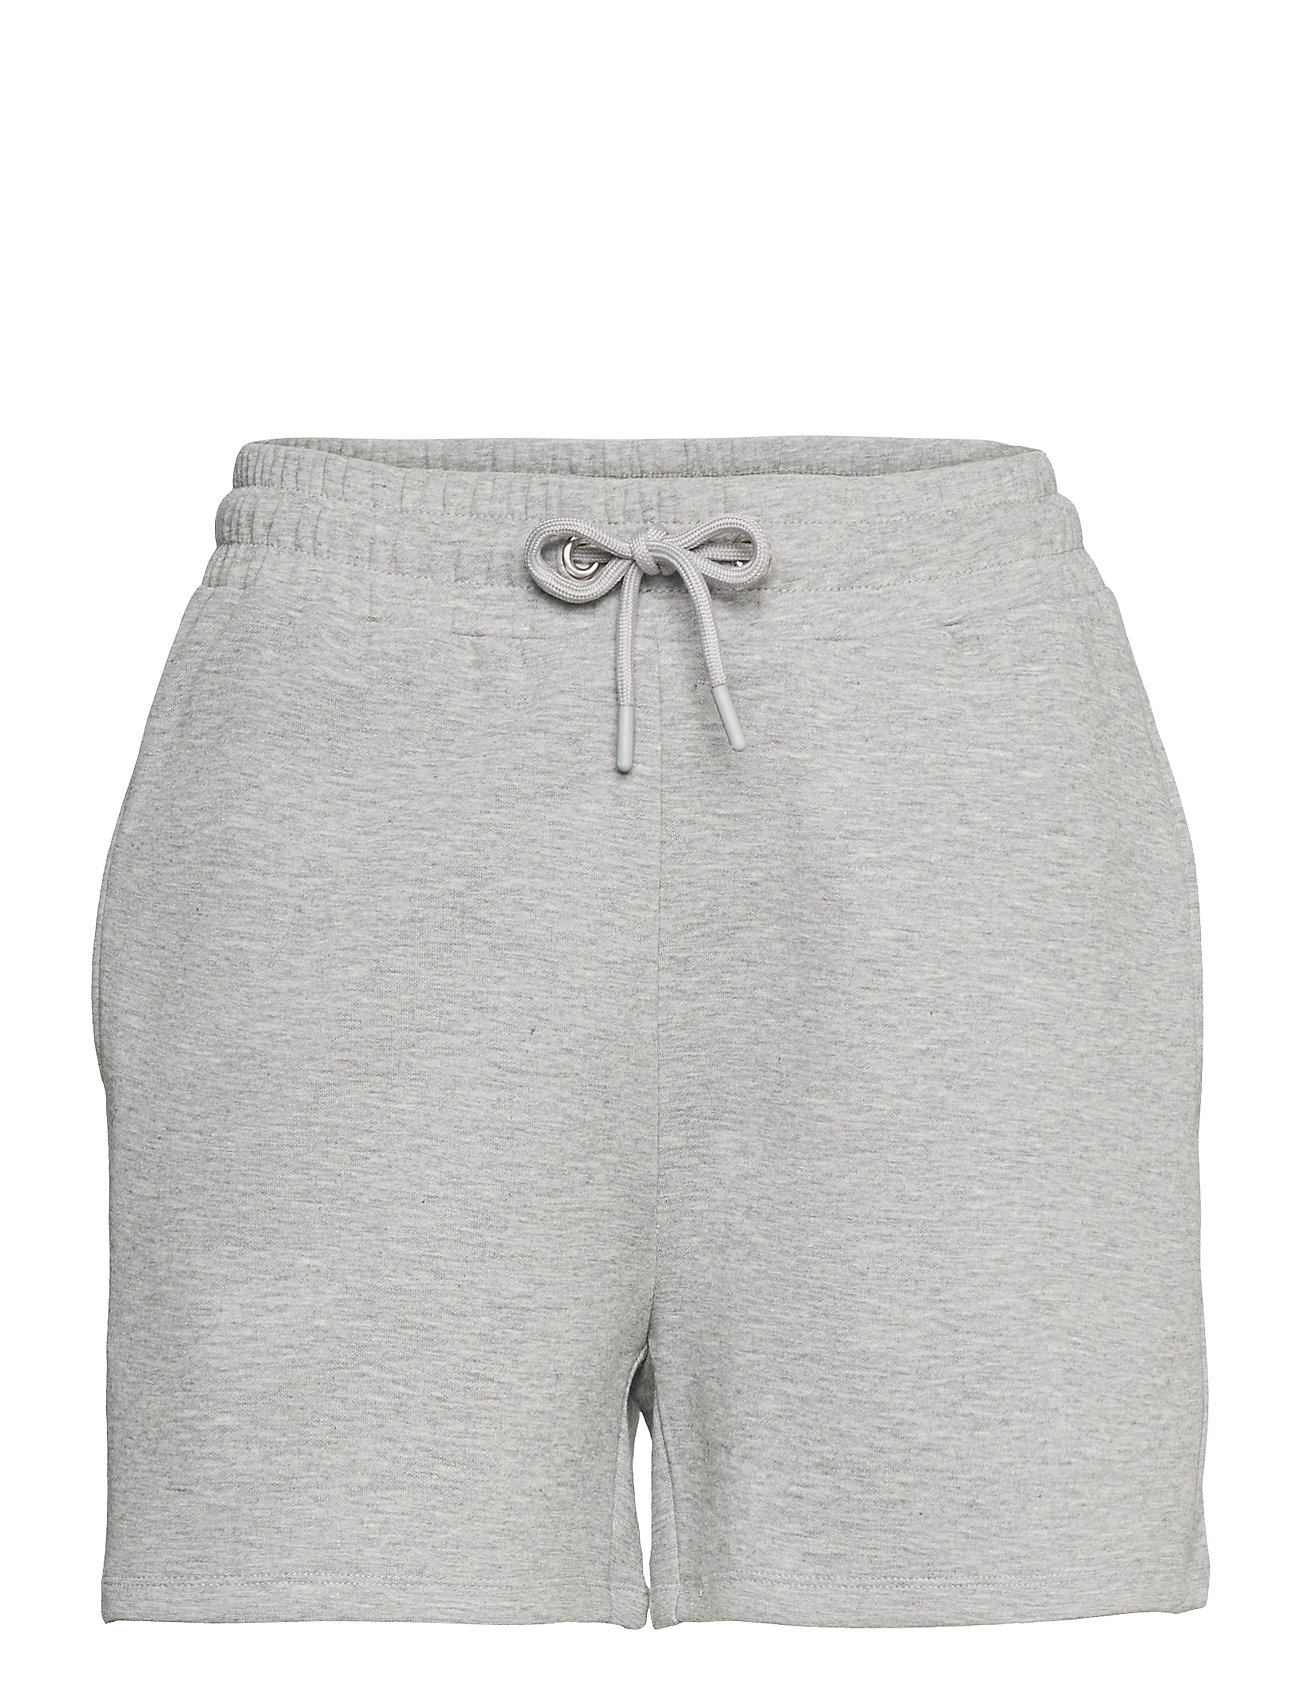 Christalia Shorts Flowy Shorts/Casual Shorts Harmaa MbyM, mbyM